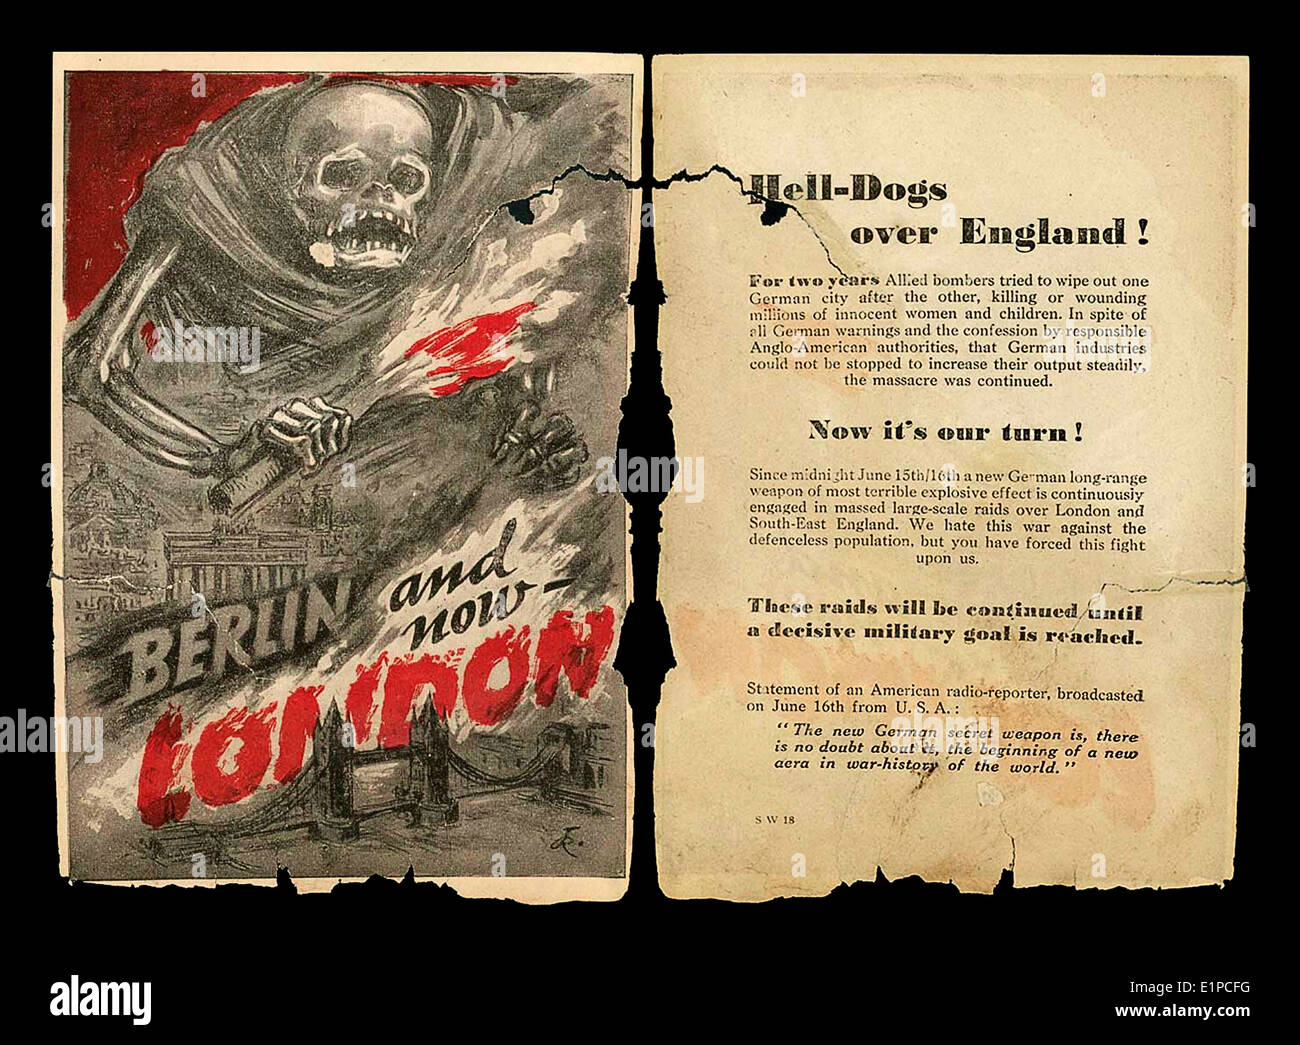 1940 La guerre de propagande notice abandonné par les bombardiers allemands sur le Sud de l'Angleterre durant la seconde guerre mondiale jusqu'à unsucessfully intimider la population... ! Banque D'Images